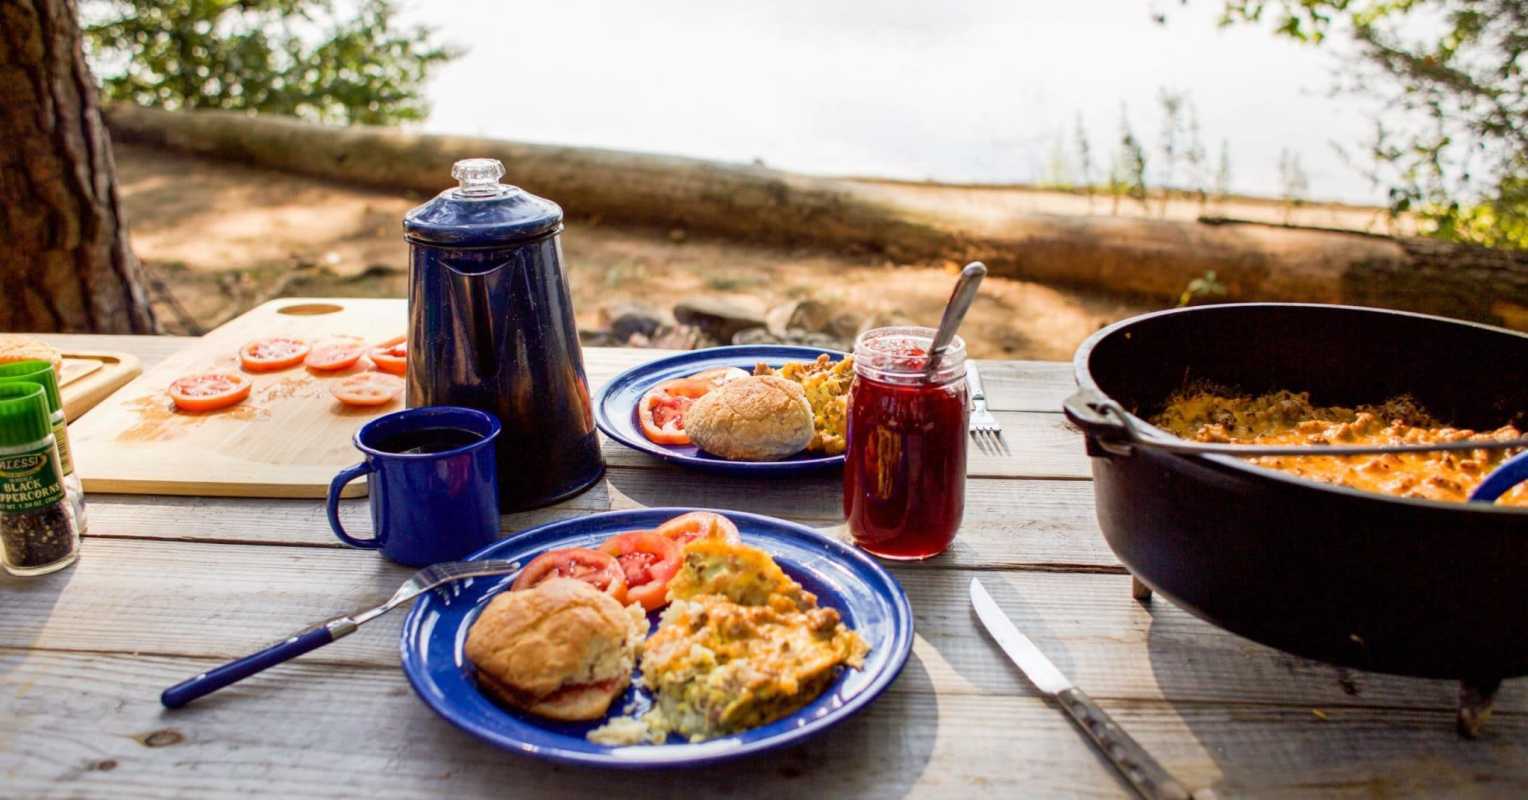 Uma cena de acampamento com um bule de café, um prato azul com café da manhã com ovos e um forno holandês na moldura